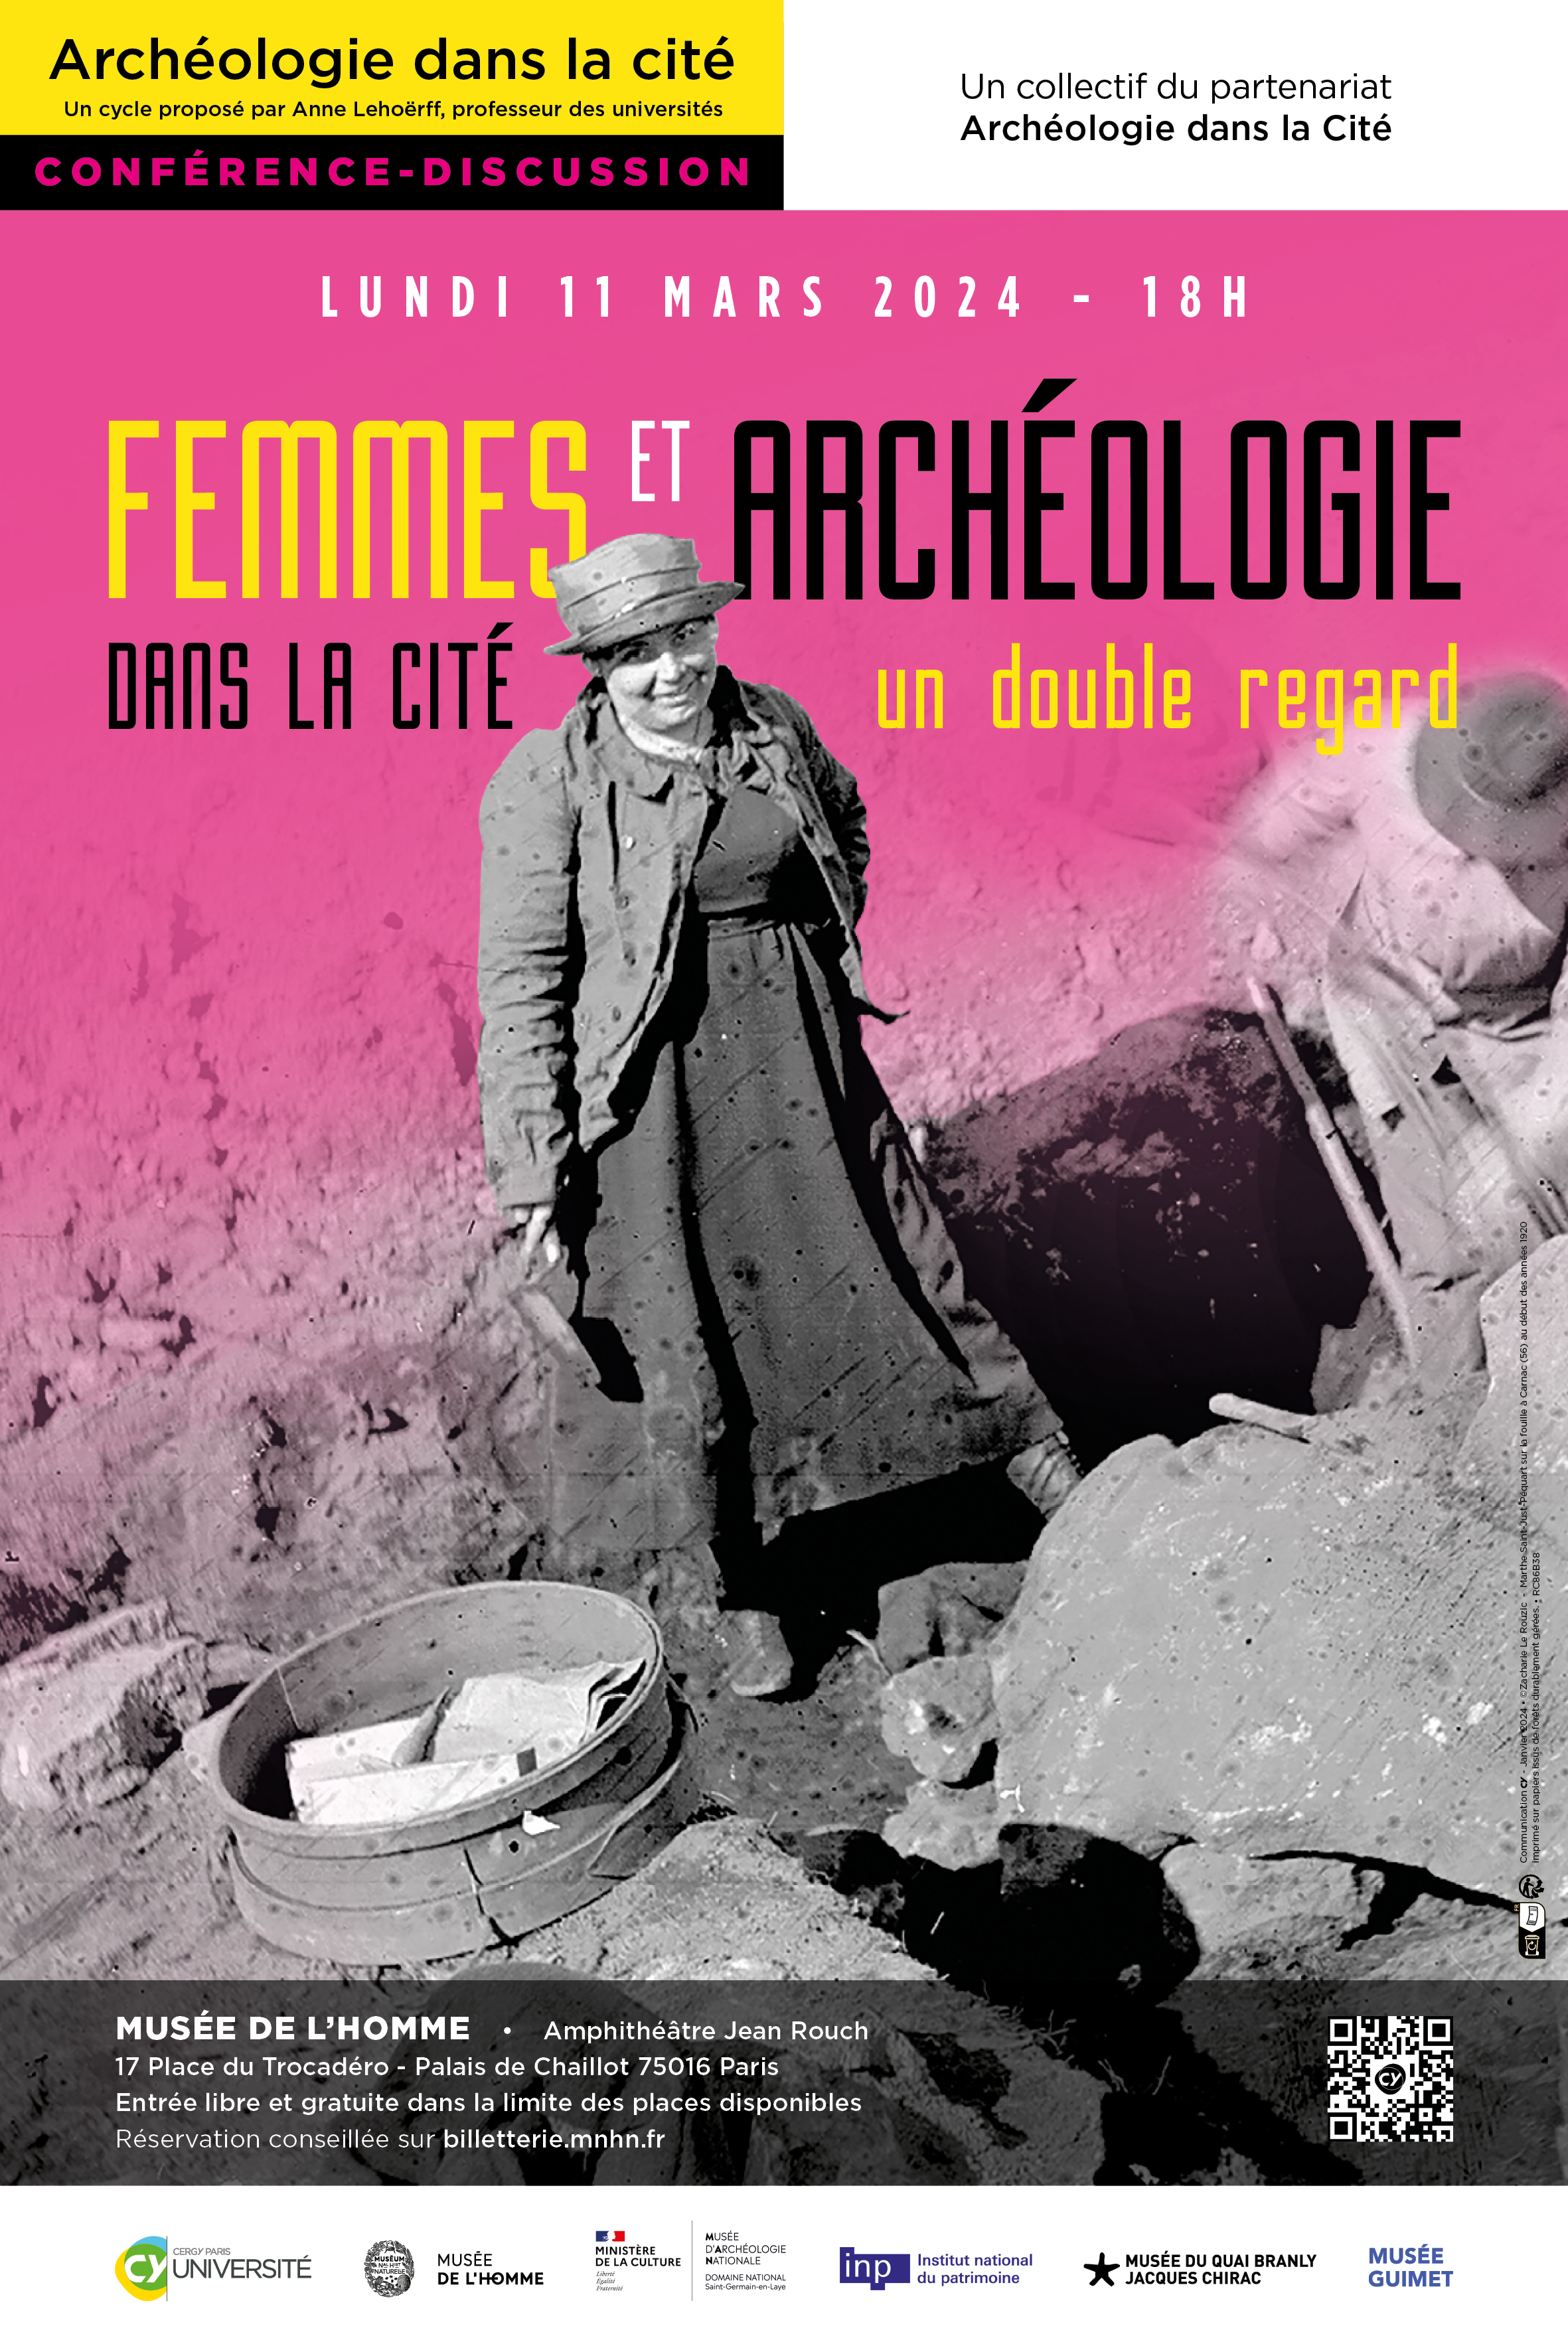 Les femmes et l'archéologie, un double regard